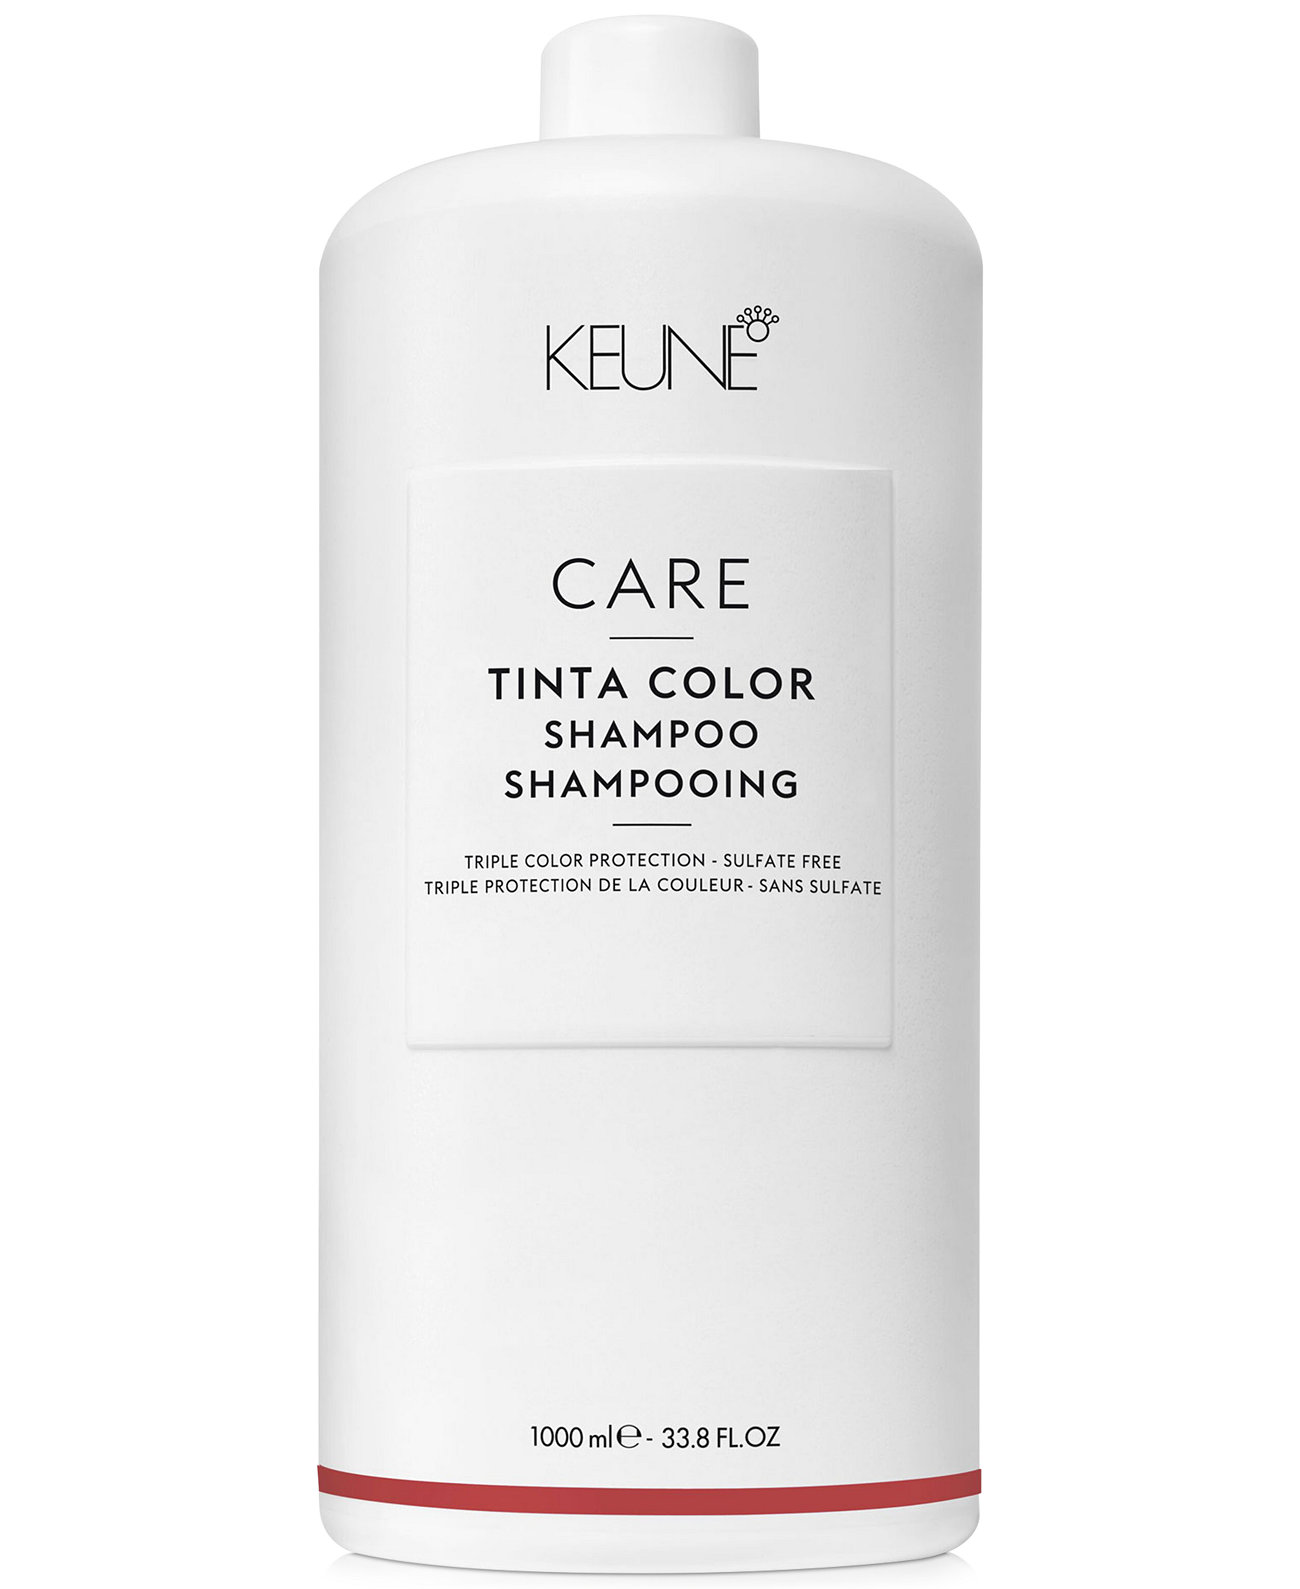 Шампунь Care Tinta Color Shampoo, 33,8 унции, от PUREBEAUTY Salon & Spa Keune